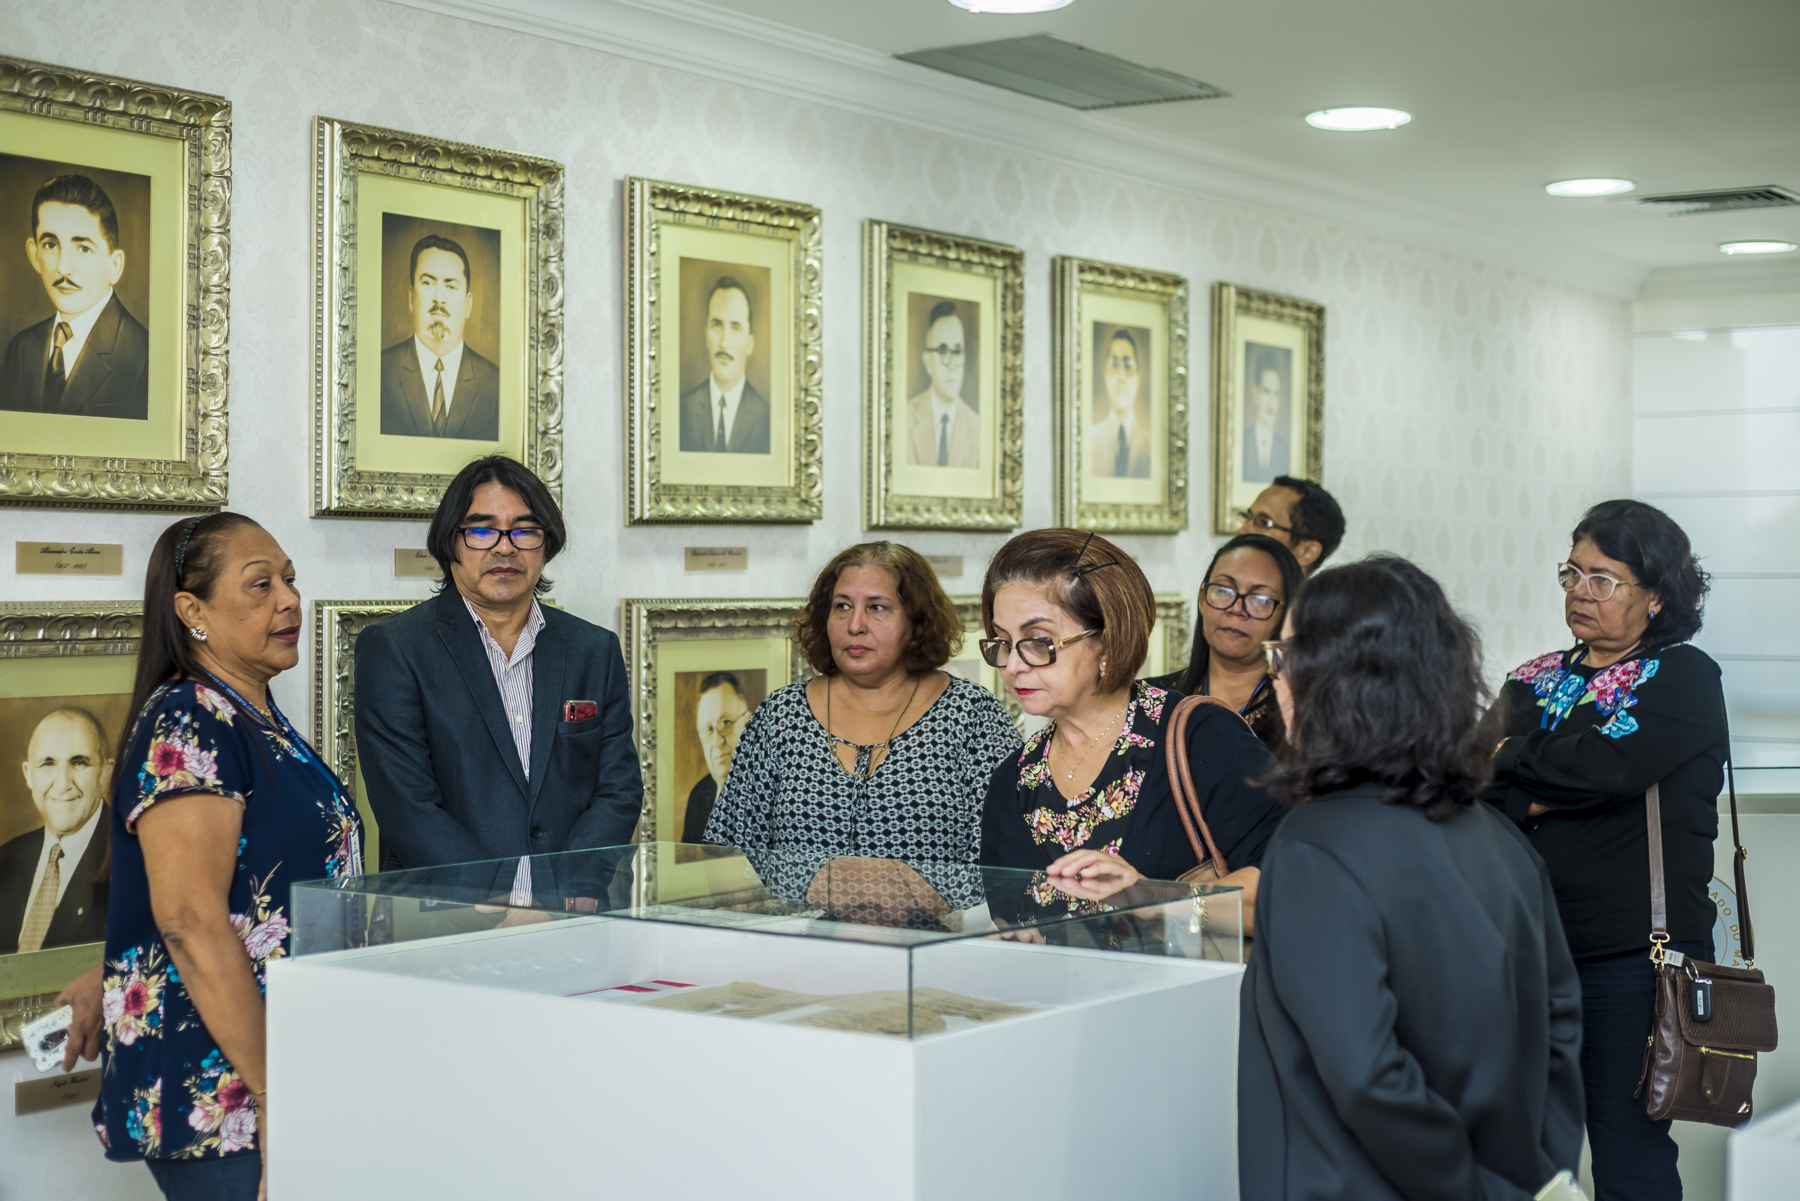 Servidores do TCE-MA visitam a exposição “Acervo Memorial do Legislativo Maranhense”